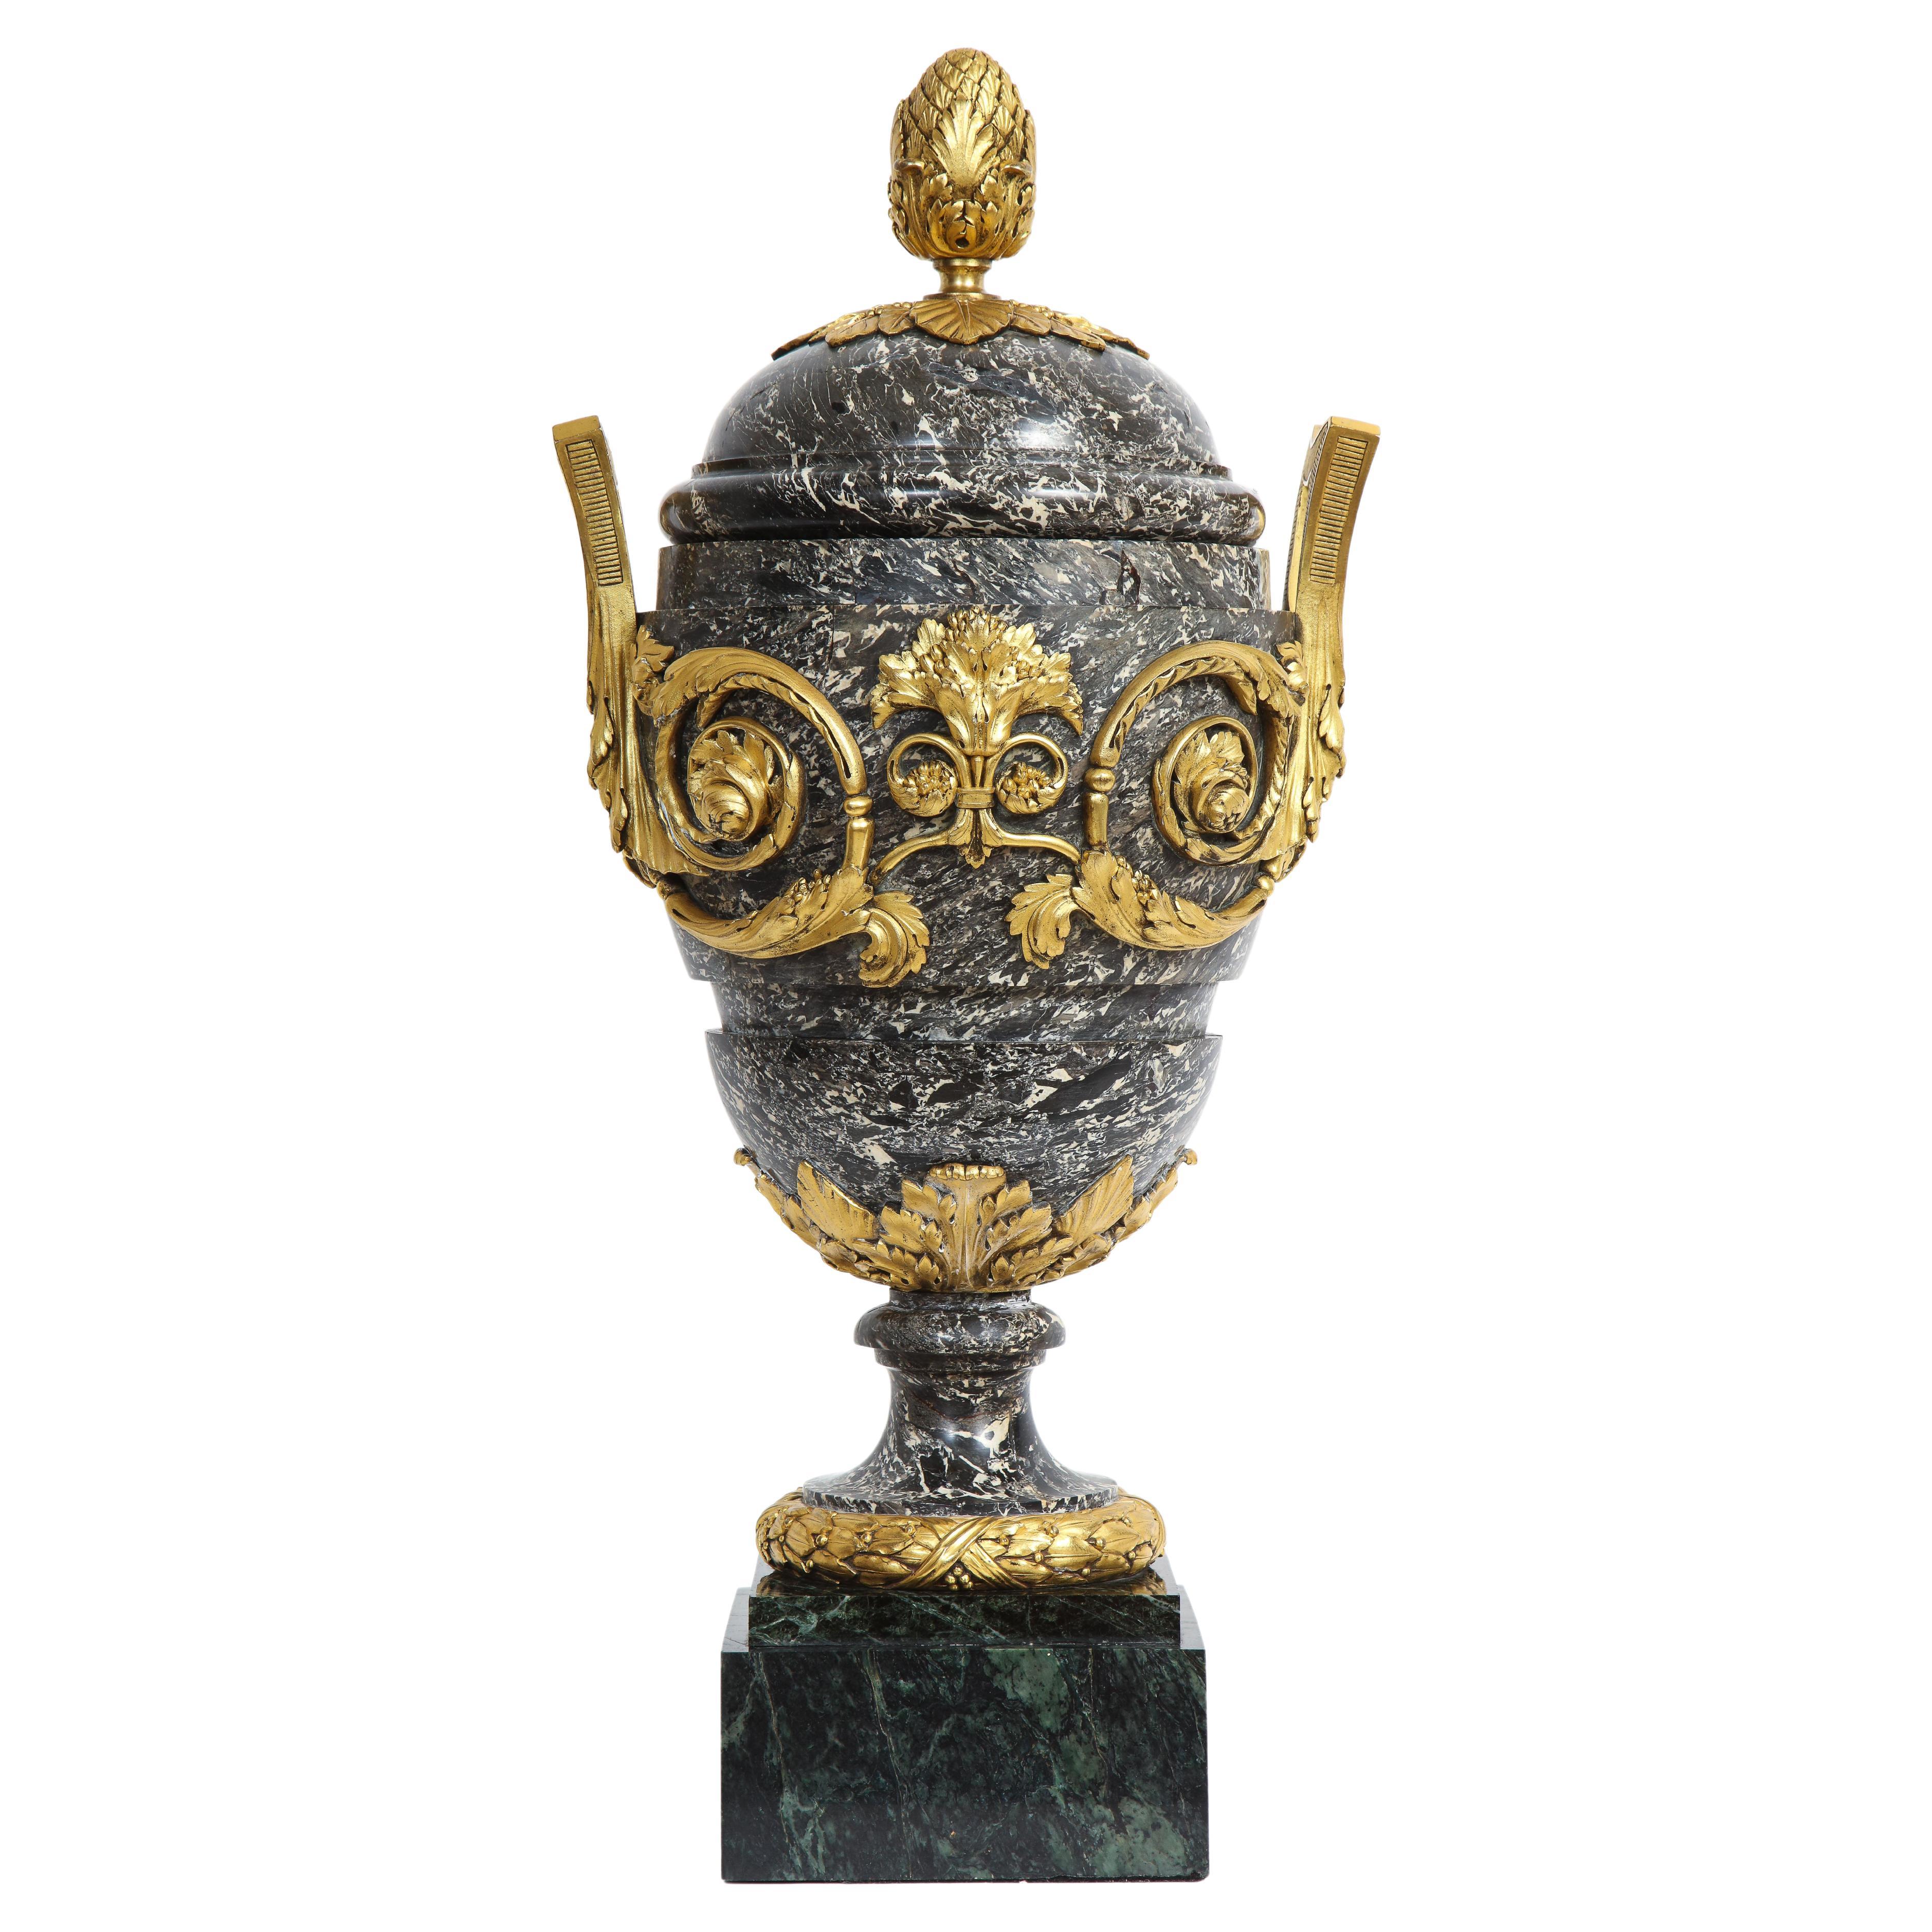 Monumentale urne française du 18/19e siècle recouverte de marbre gris monté en bronze doré avec poignées